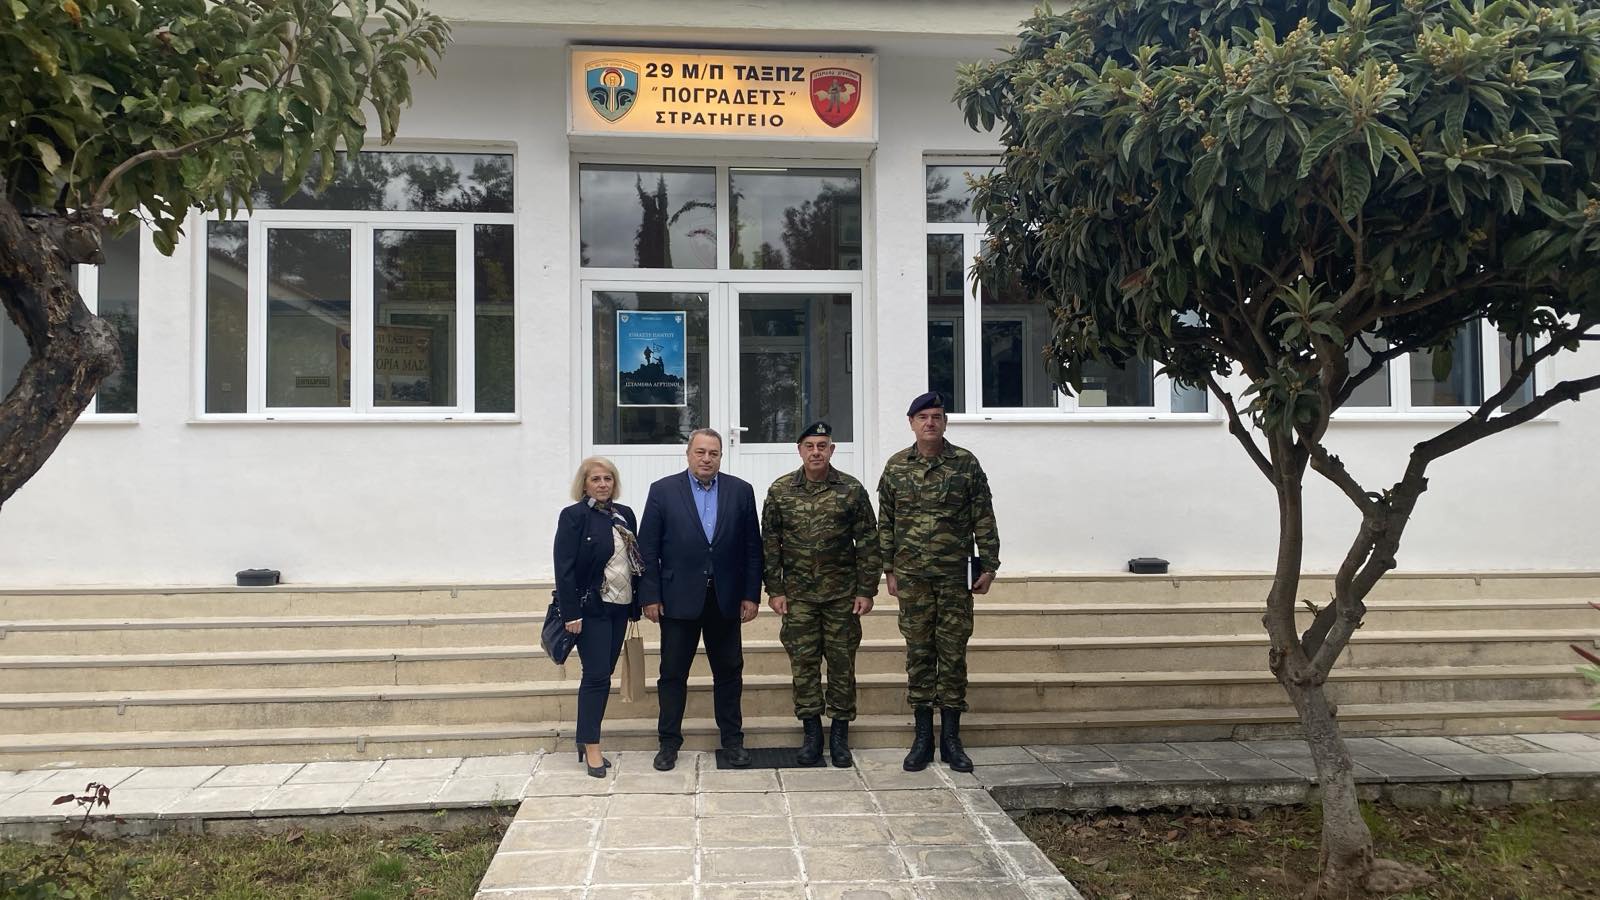 O Ευριπίδης Στυλιανίδης συναντήθηκε με τους Ταξίαρχους της Κομοτηνής, ως μέλος της επιτροπής Εθνικής Άμυνας της Βουλής